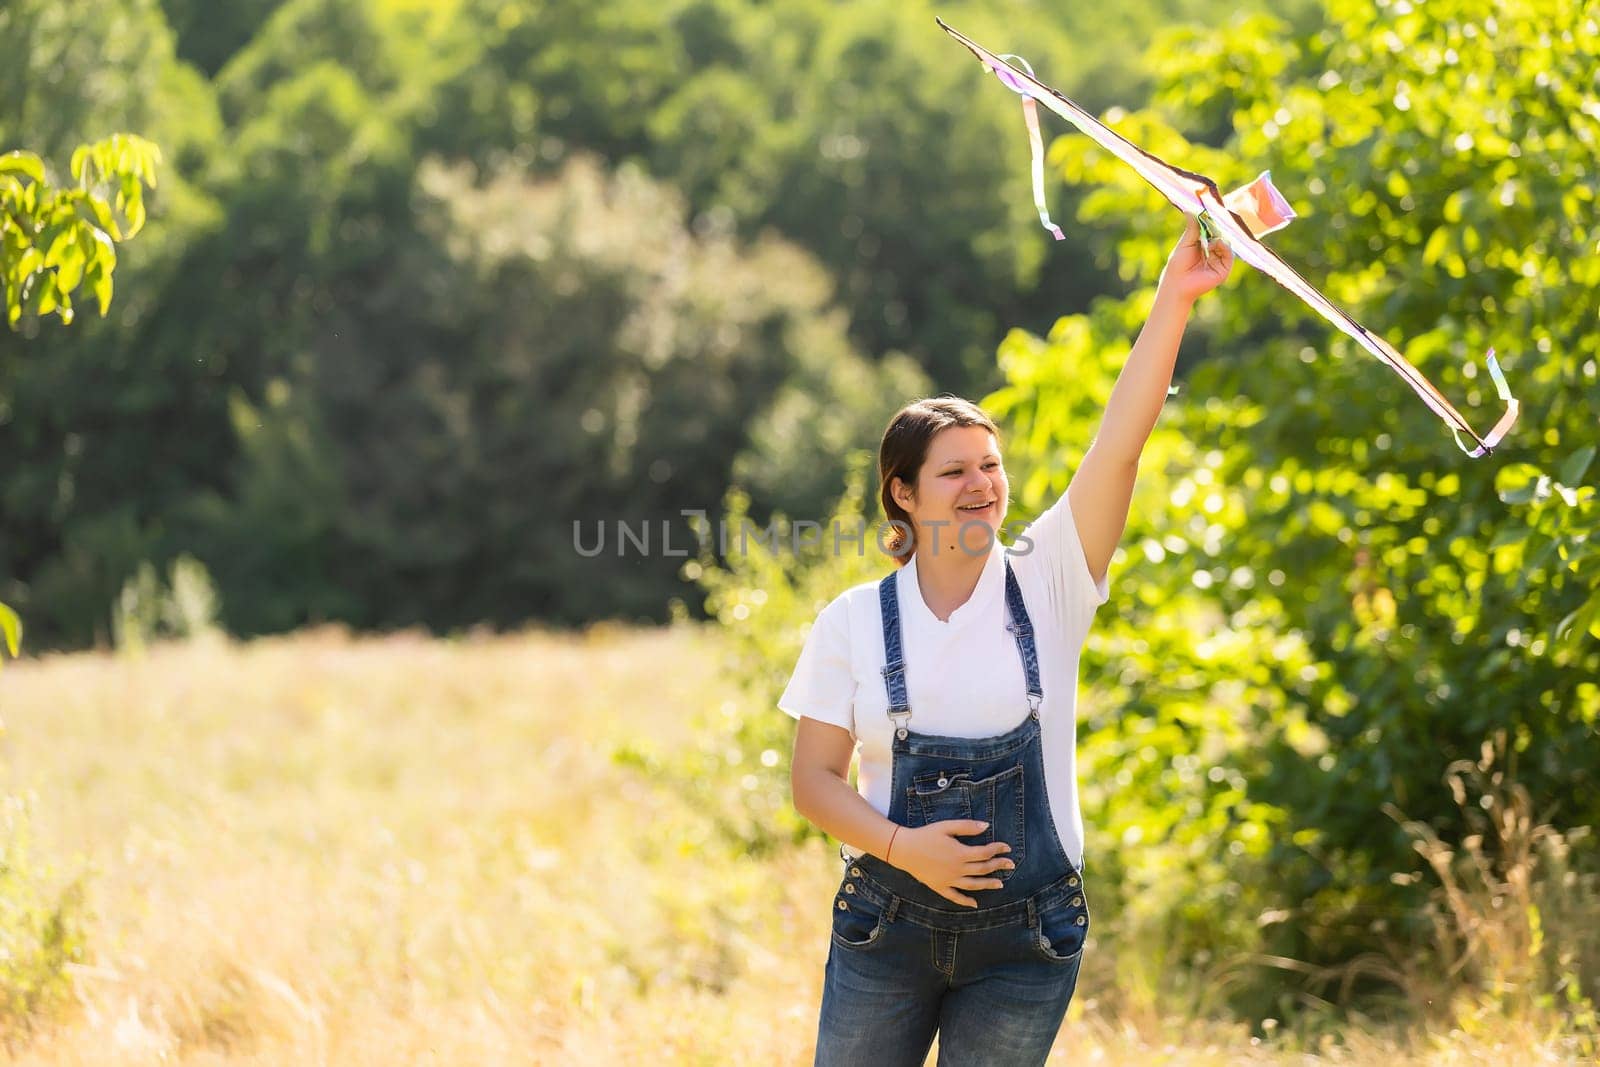 A pregnant woman runs into the sky kite by Andelov13